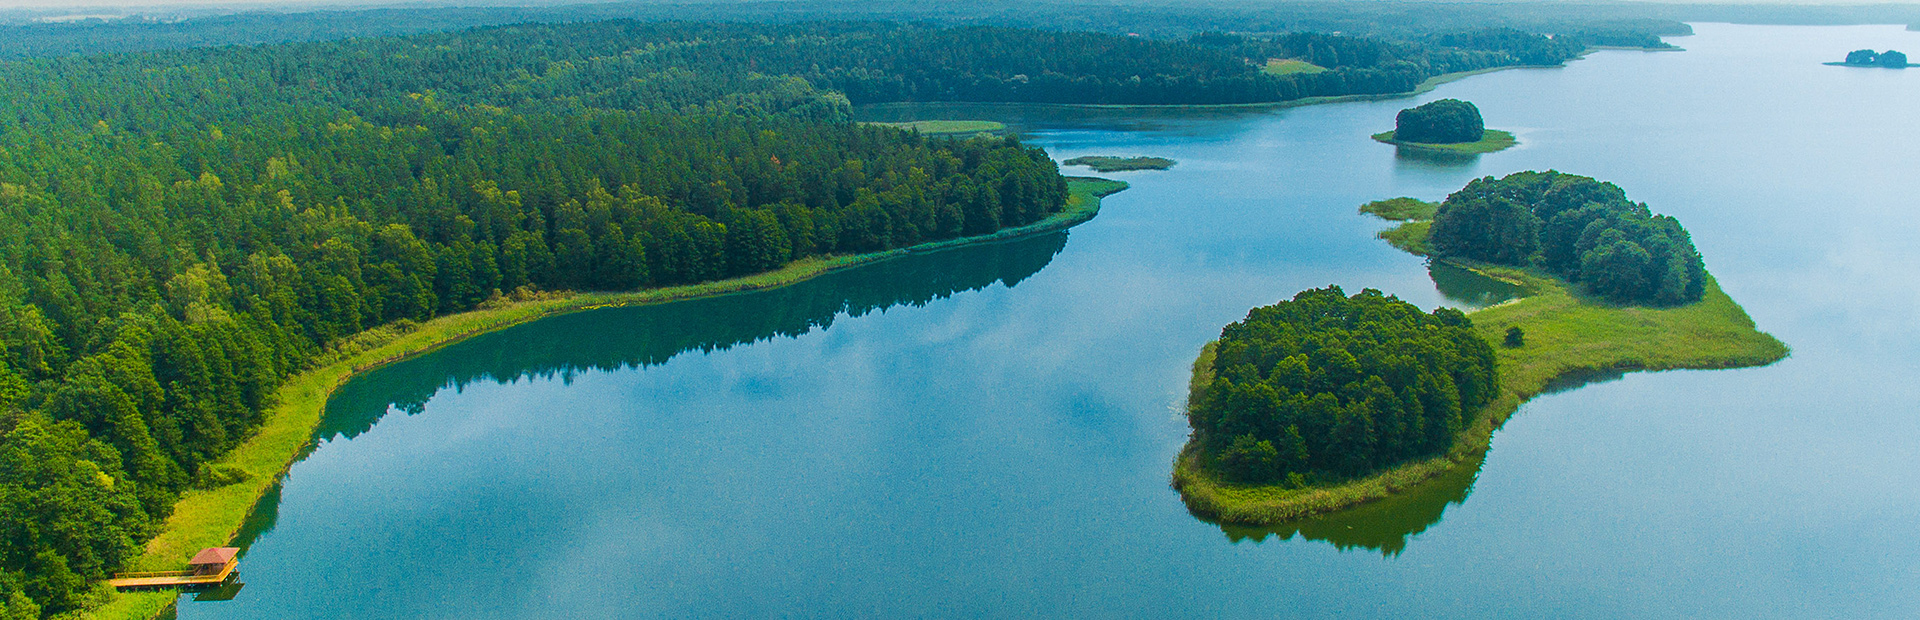 Zdjęcie przedstawia jezioro z lotu ptaka, wzdłuż którego linii brzegowej gęsto rosną drzewa. Na środku jeziora widnieją dwie wysepki.